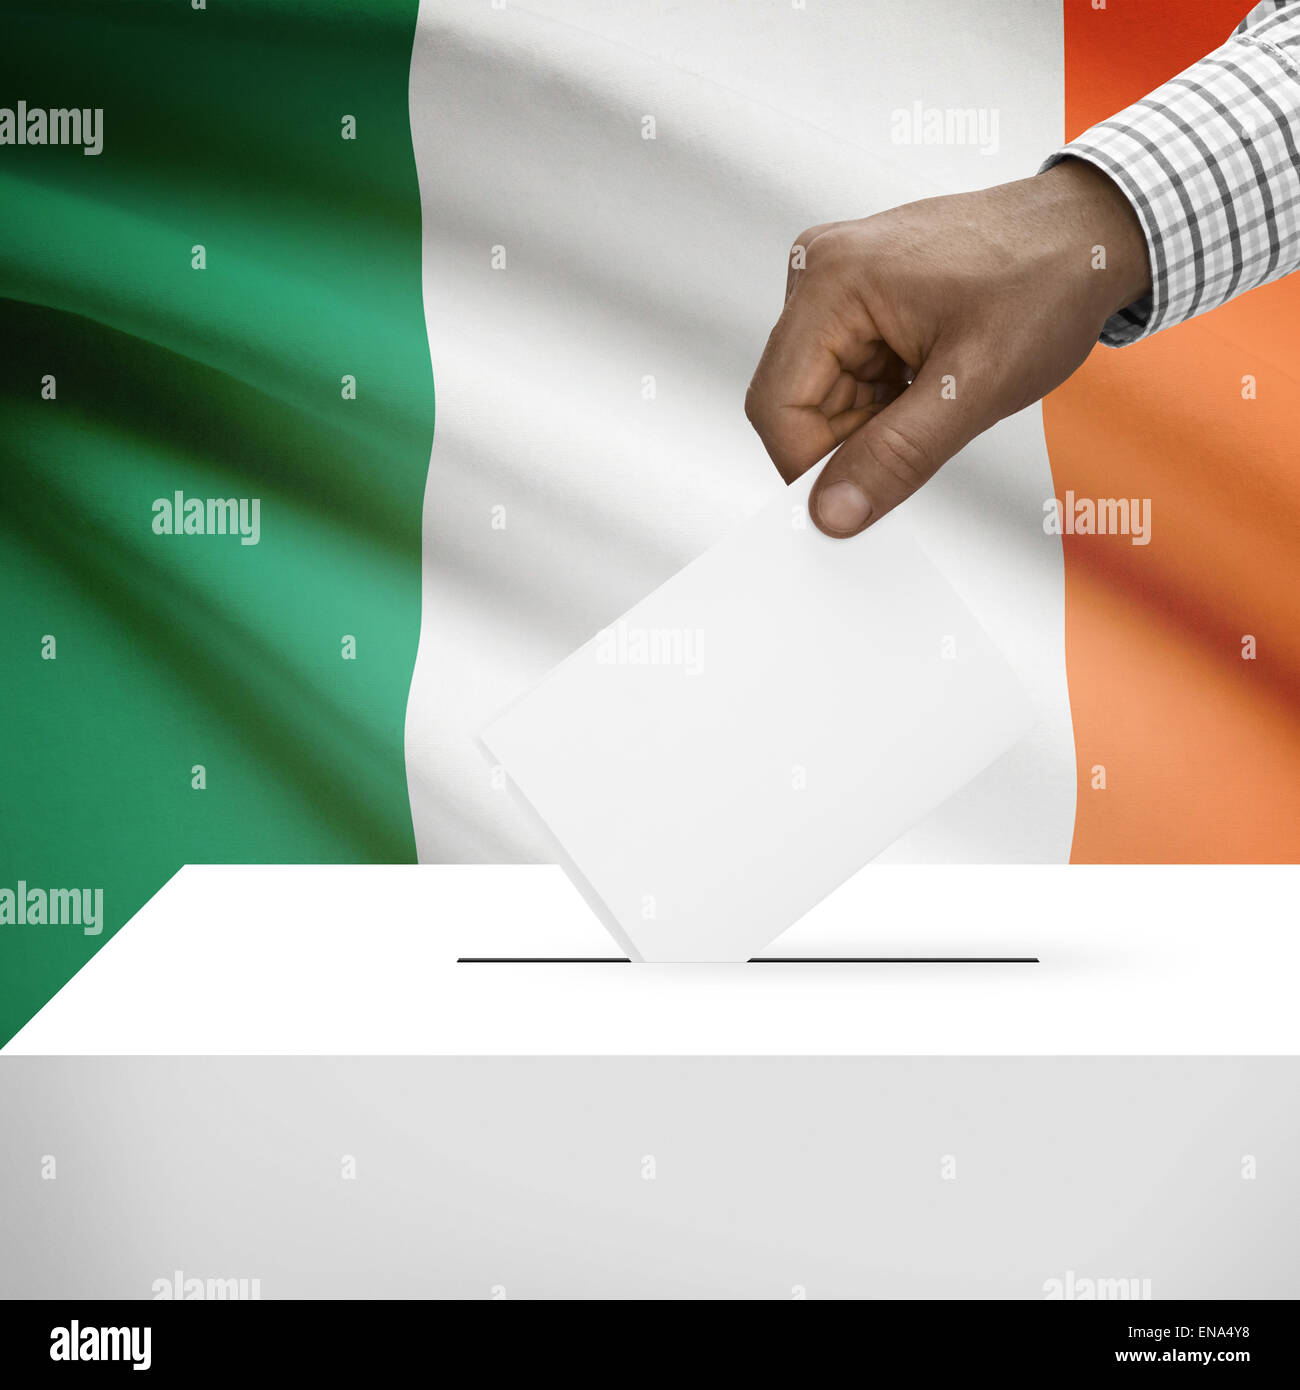 Ballot box with flag on background - Ireland Stock Photo